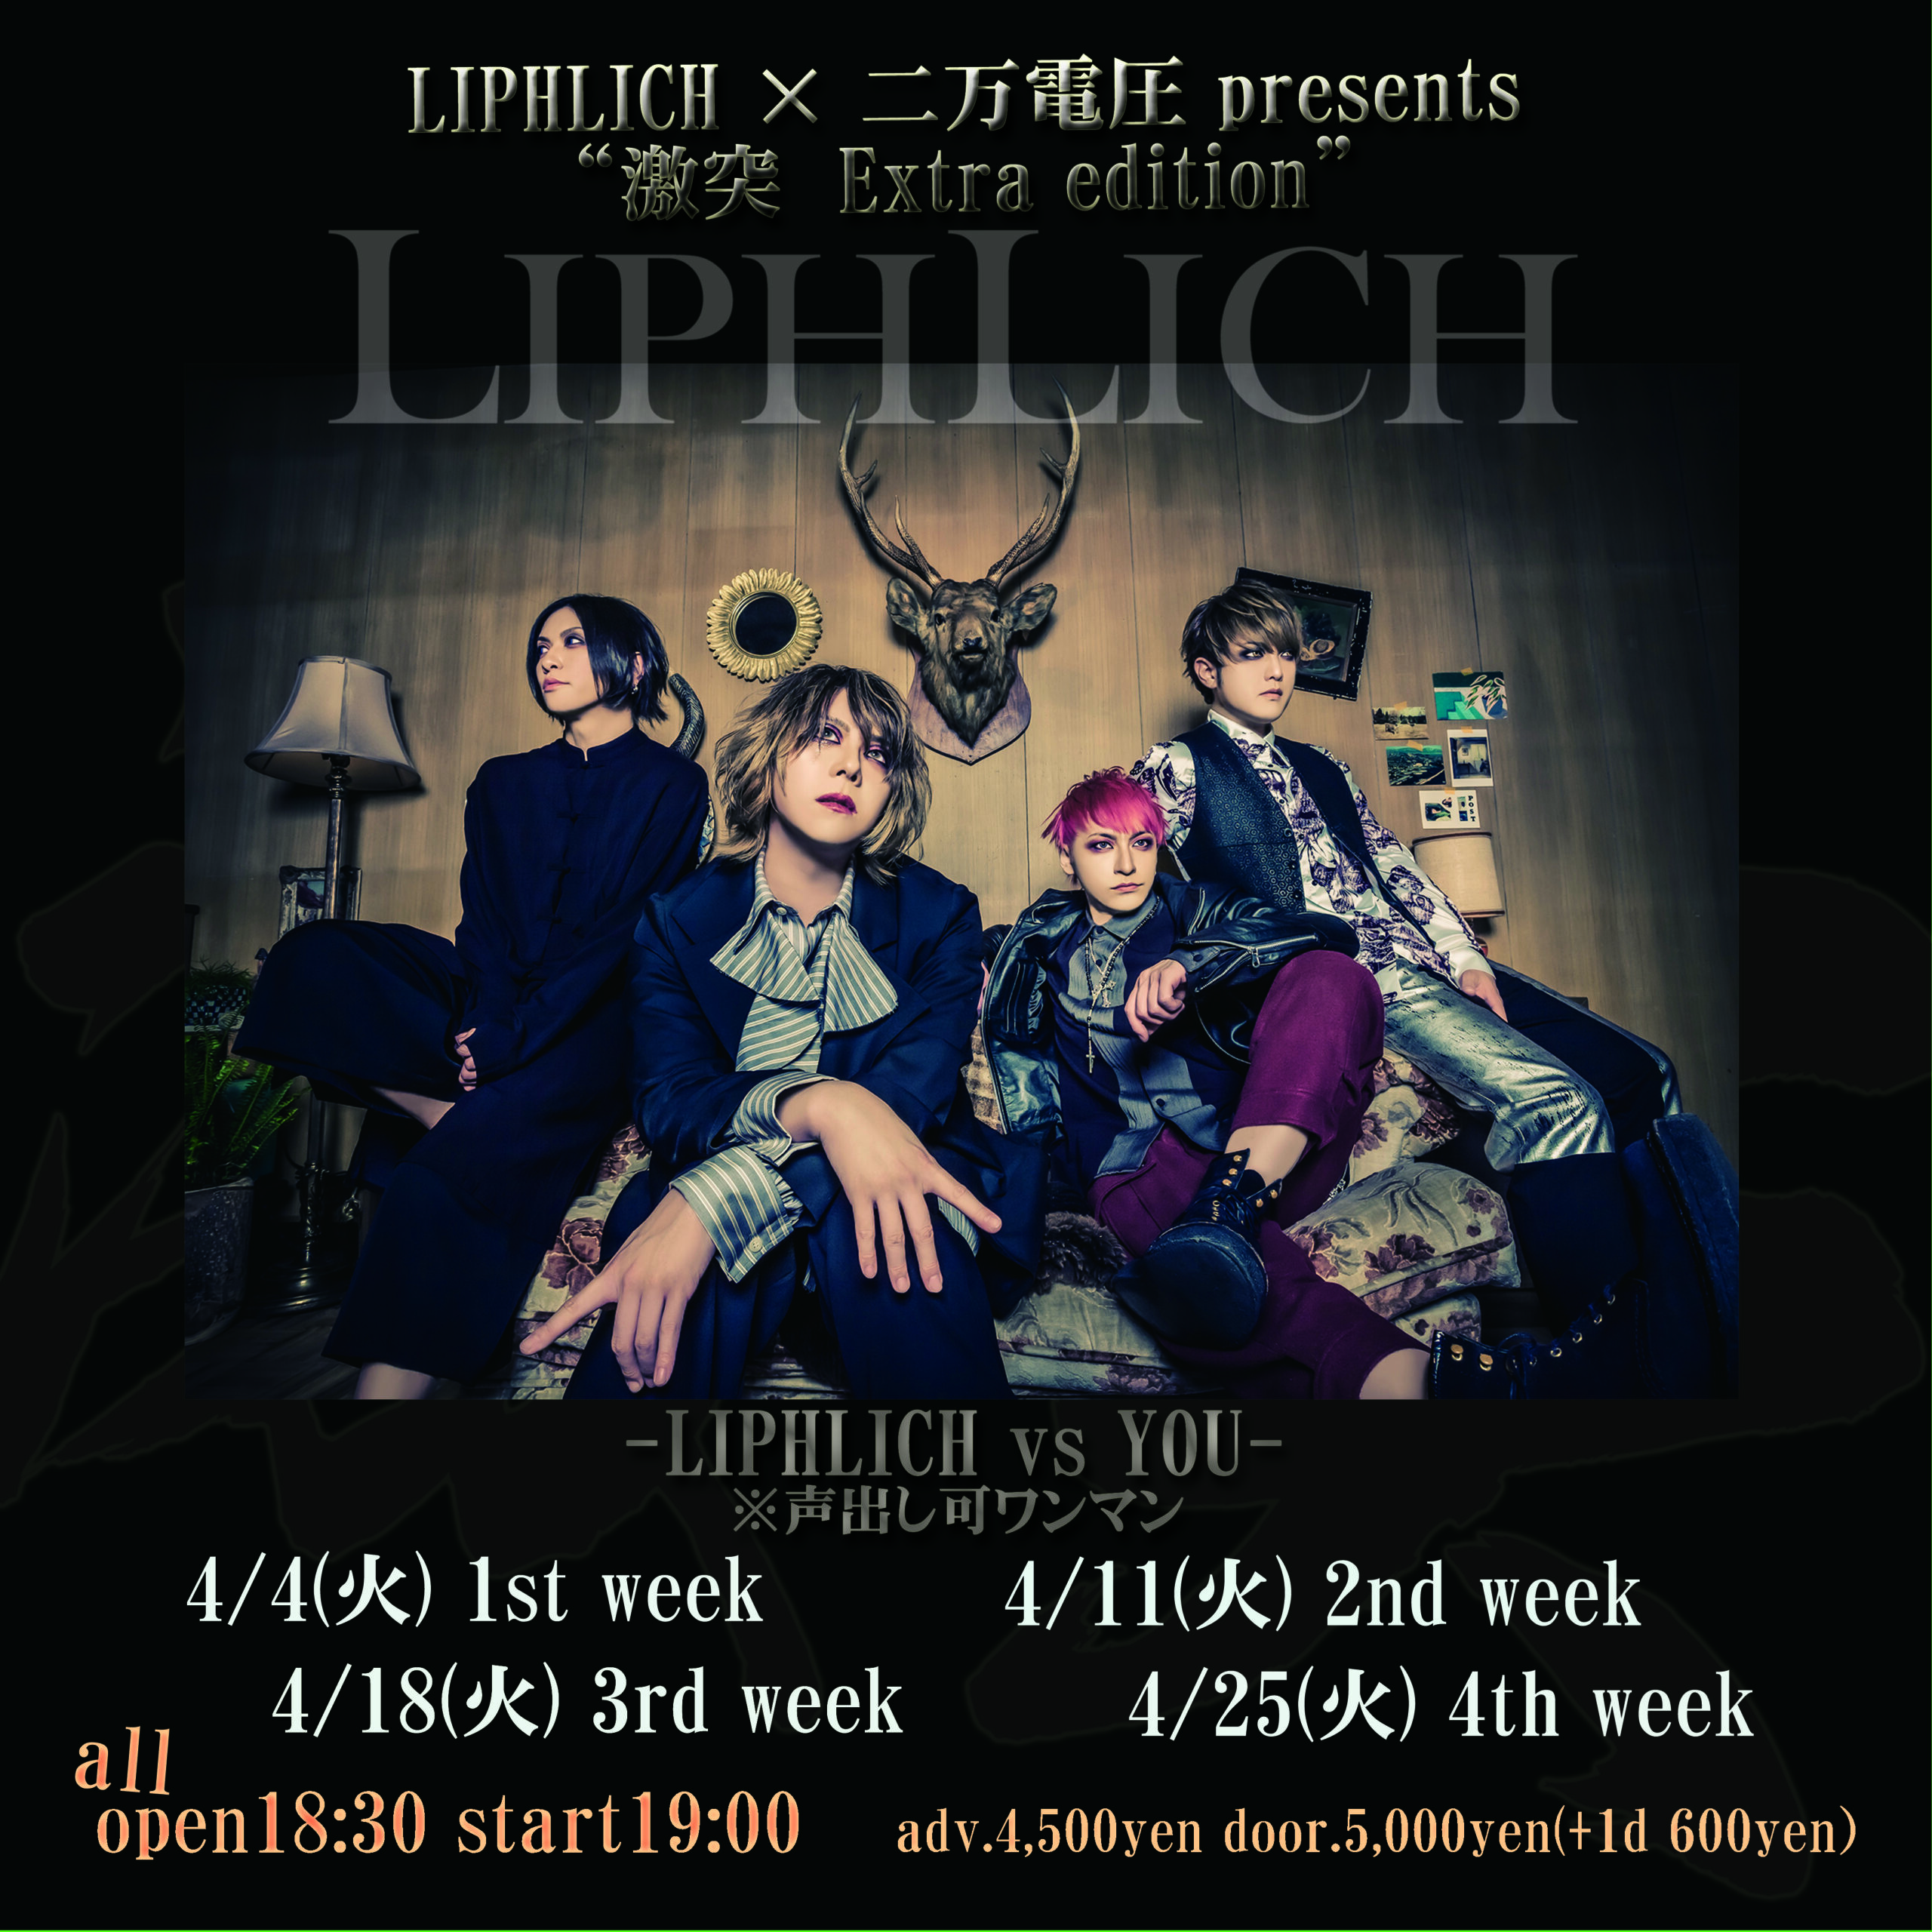 LIPHLICH × 二万電圧 presents ”激突 Extra edition” -LIPHLICH vs YOU 4th week-  ※声出し可ワンマン